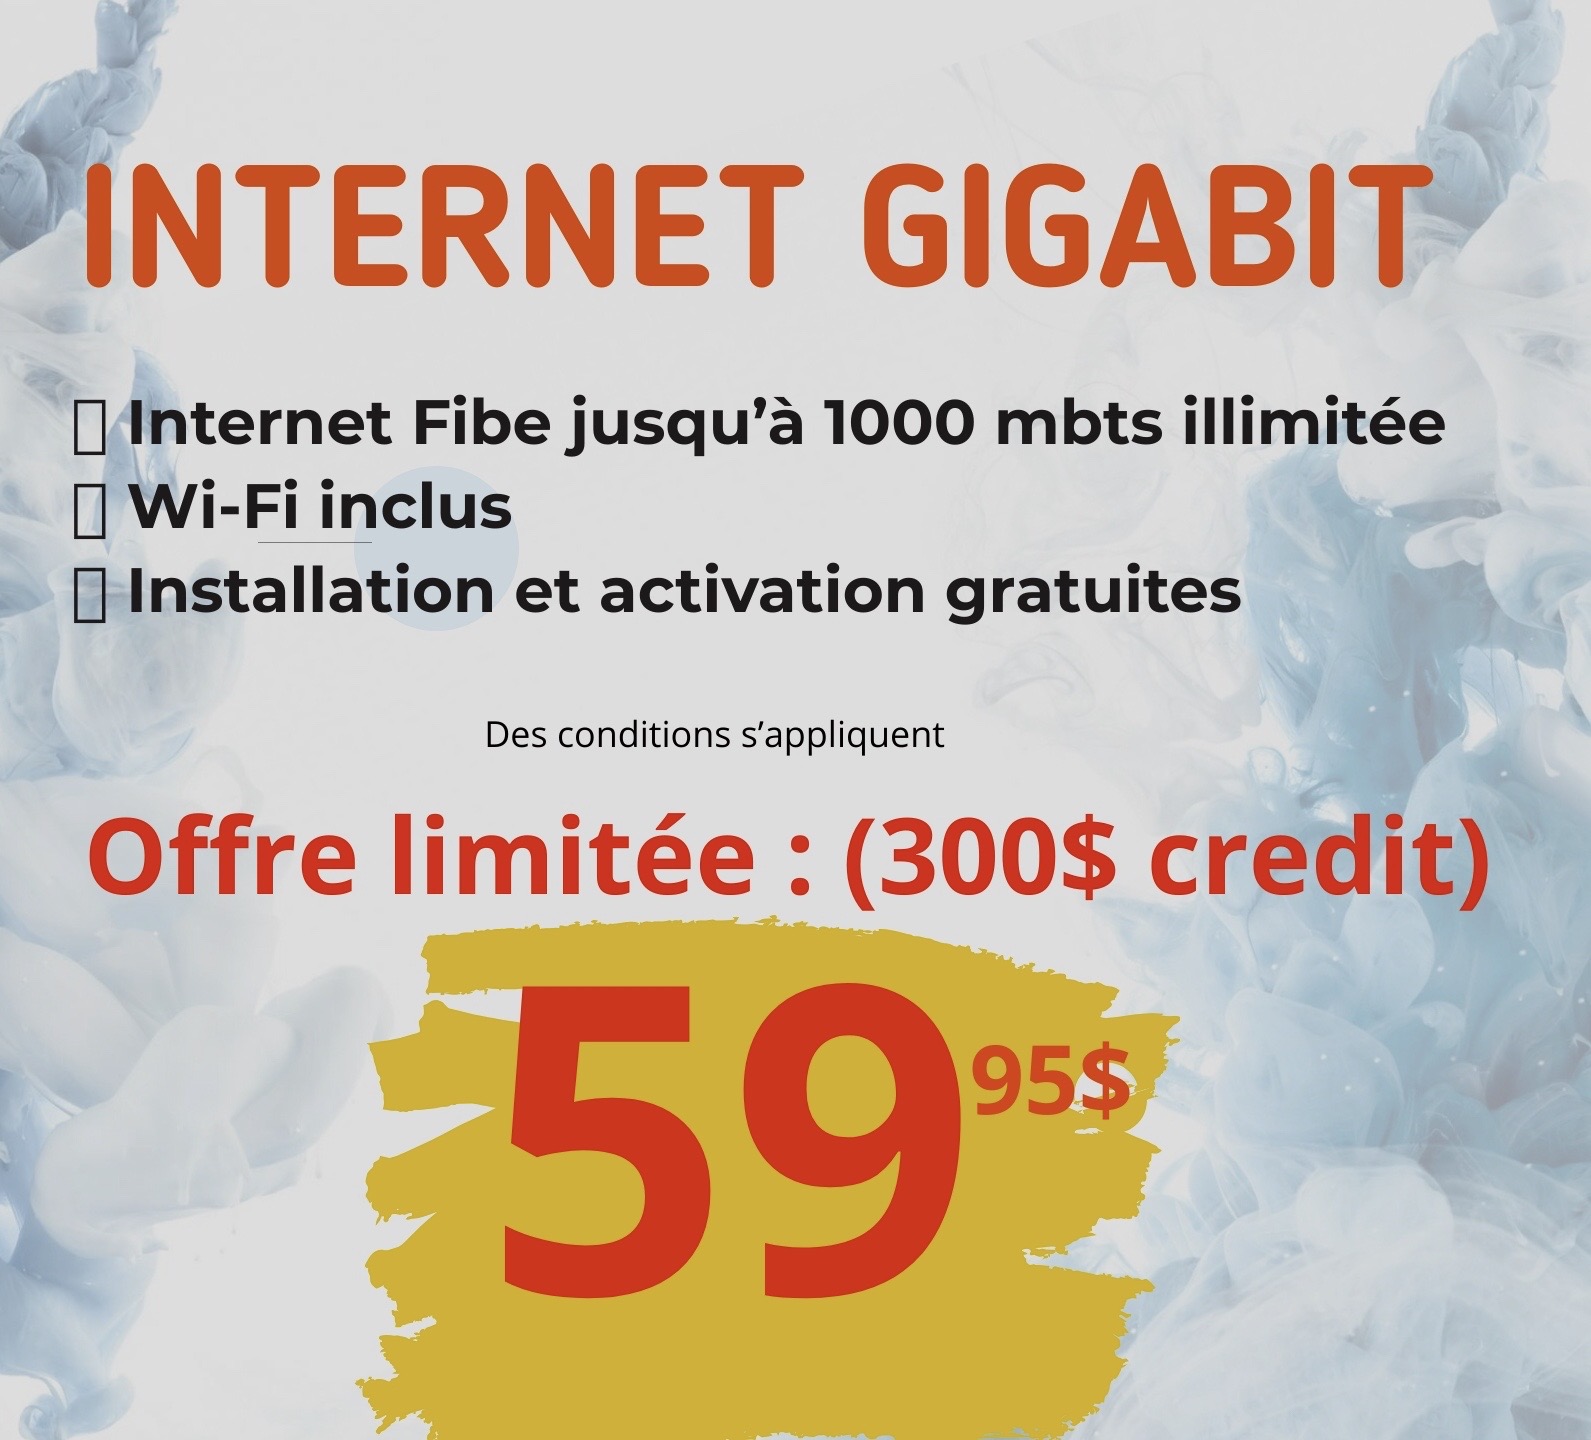 Internet affaire Gigabit/s